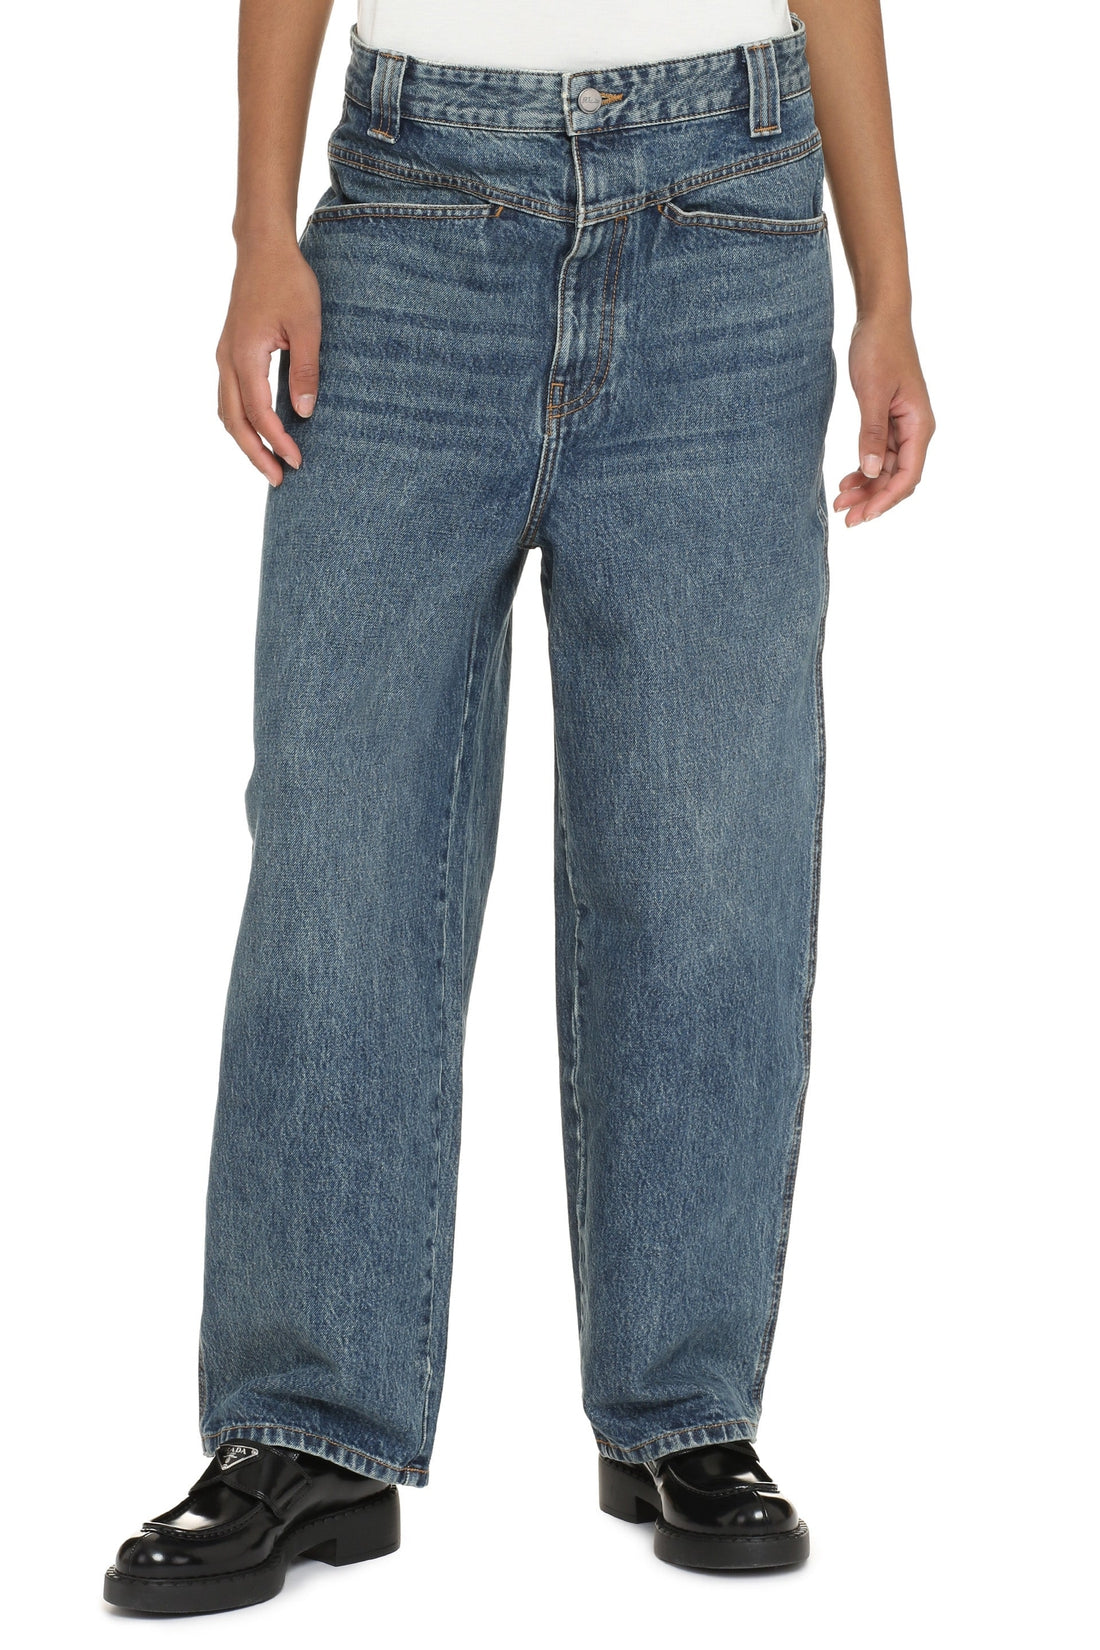 Khaite-OUTLET-SALE-The Preen Jean wide-leg jeans-ARCHIVIST